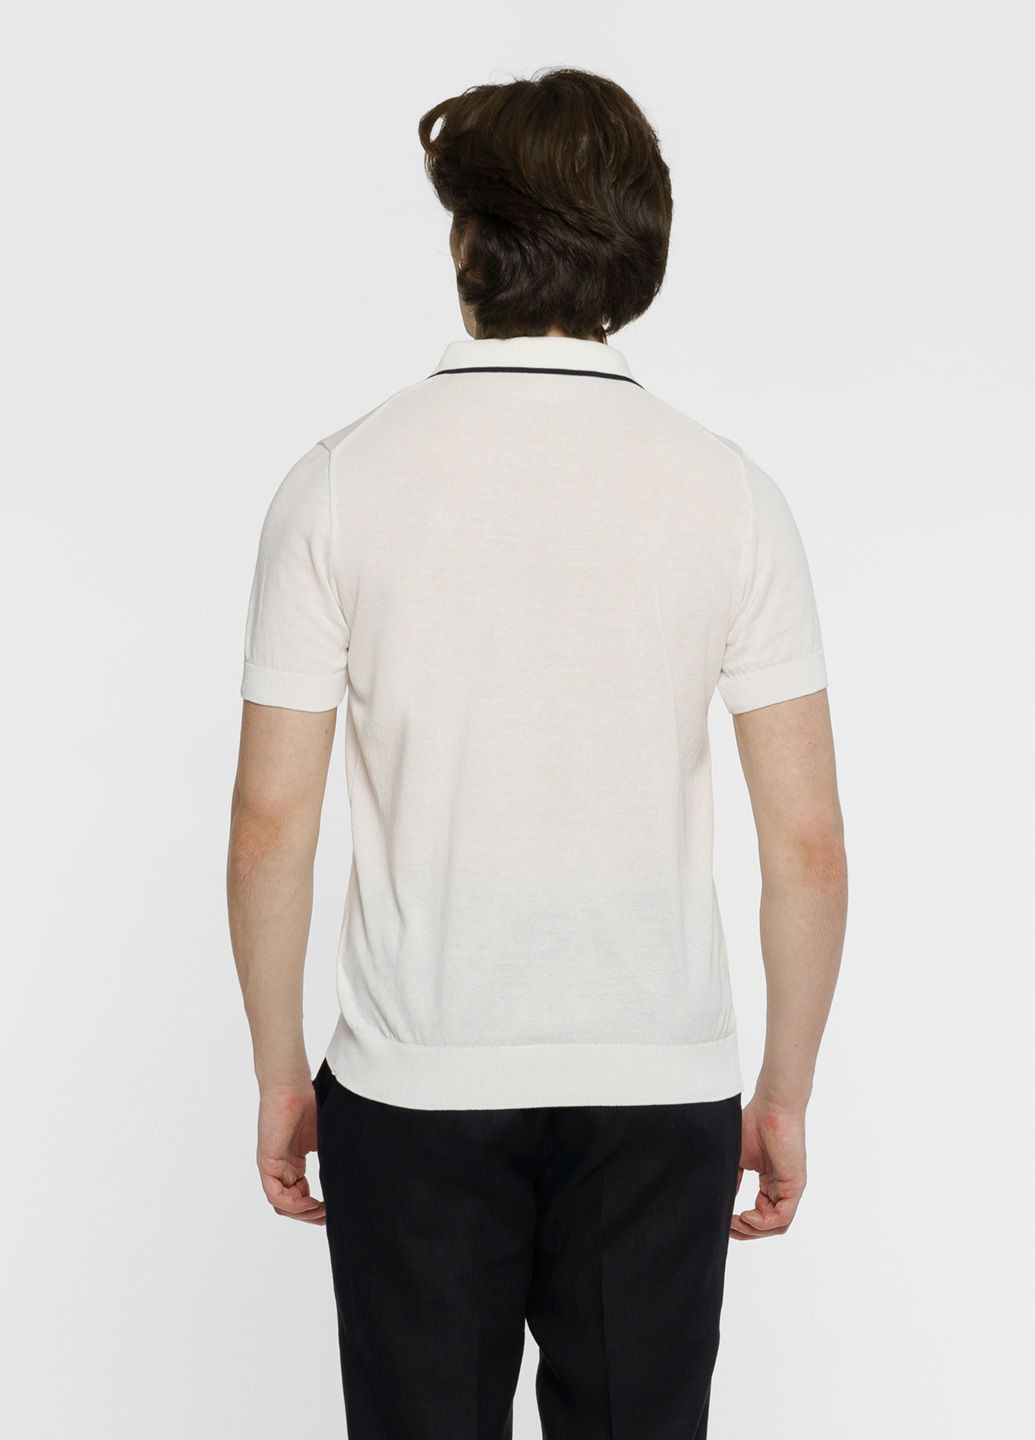 Белая футболка-поло мужское белое для мужчин Arber однотонная